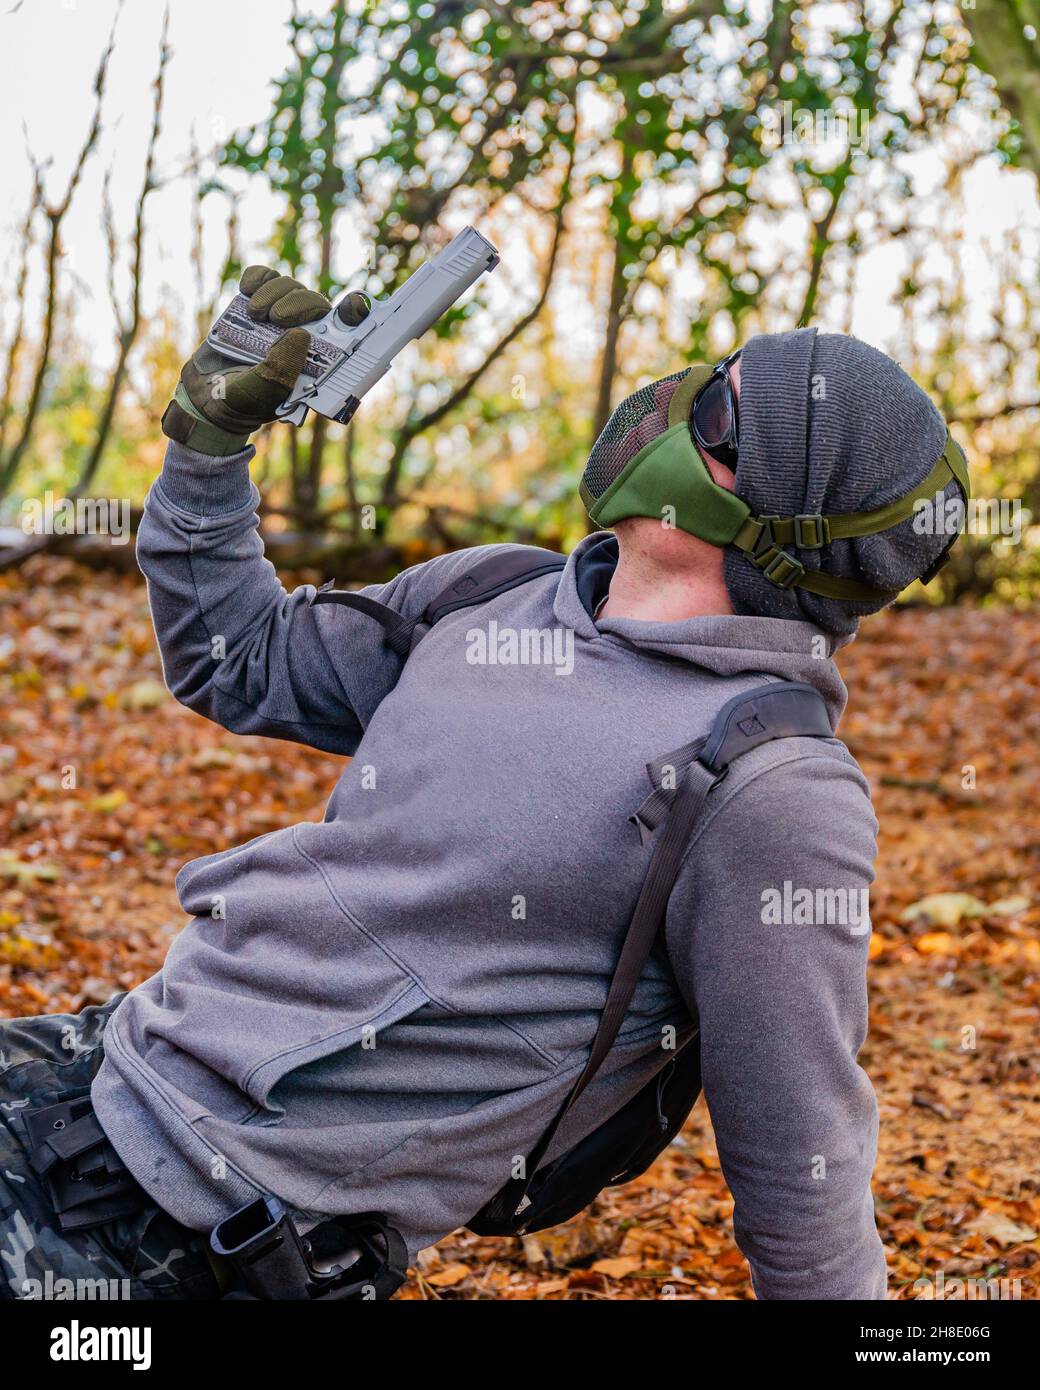 Airsoft-Spieler, der mitten in einem Spiel im Wald eine Pose für die Kamera aufwirft, hält eine benutzerdefinierte Handfeuerwaffe und trägt Schutzausrüstung Stockfoto